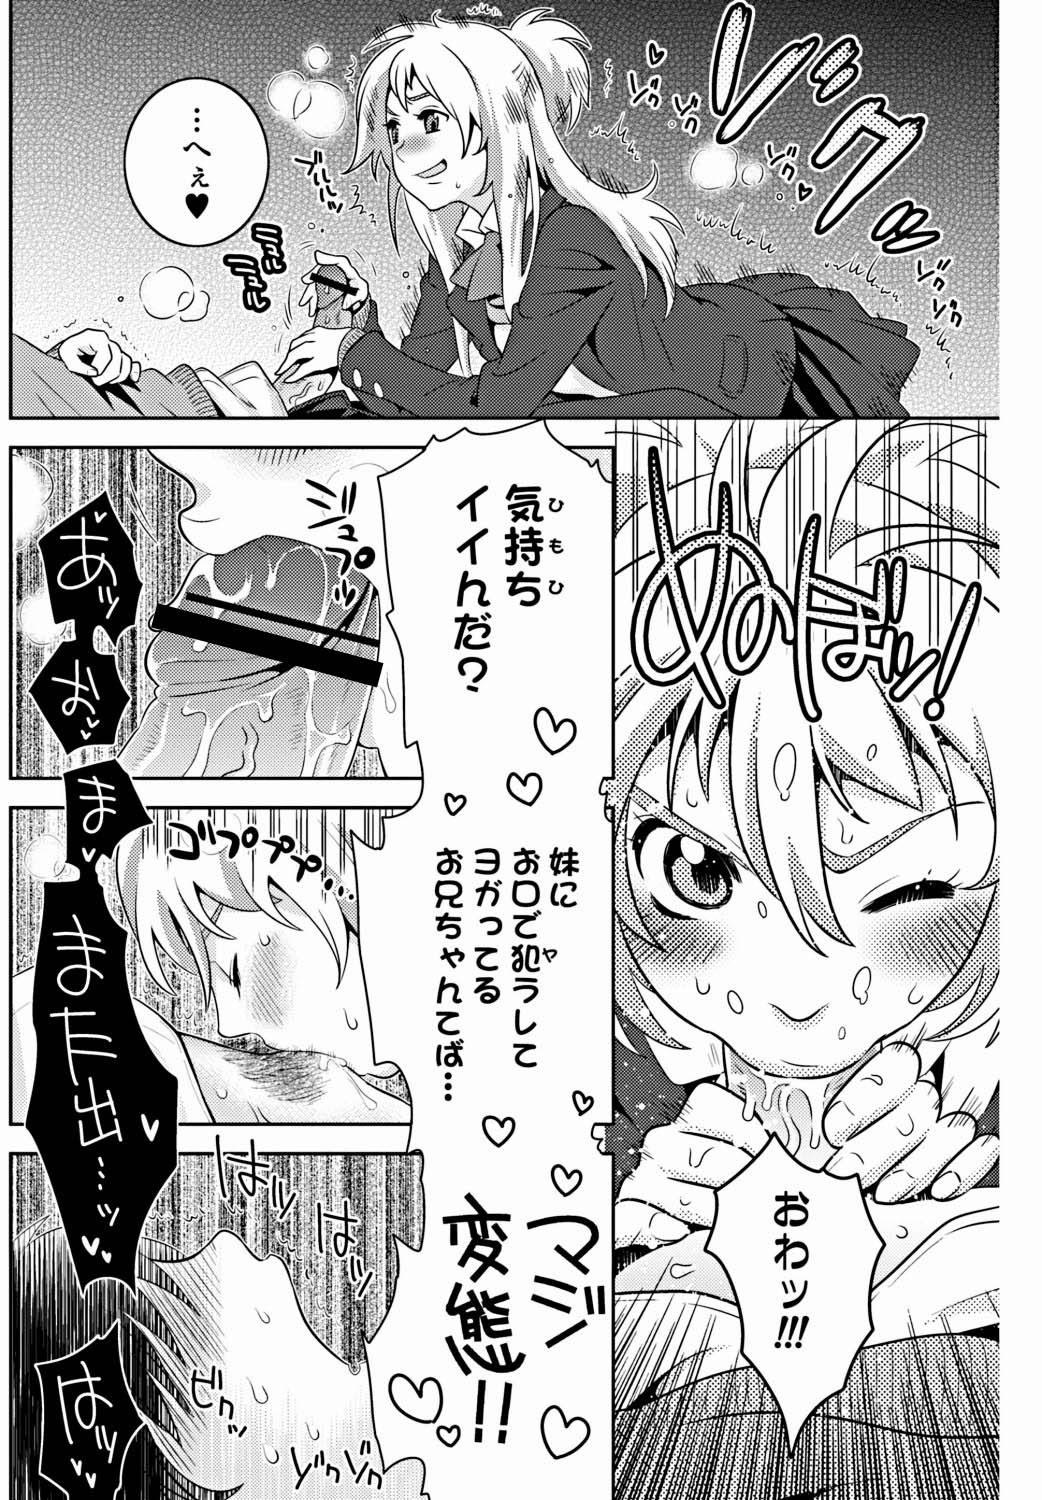 Bishoujo Kakumei KIWAME 2012-02 Vol.18 124